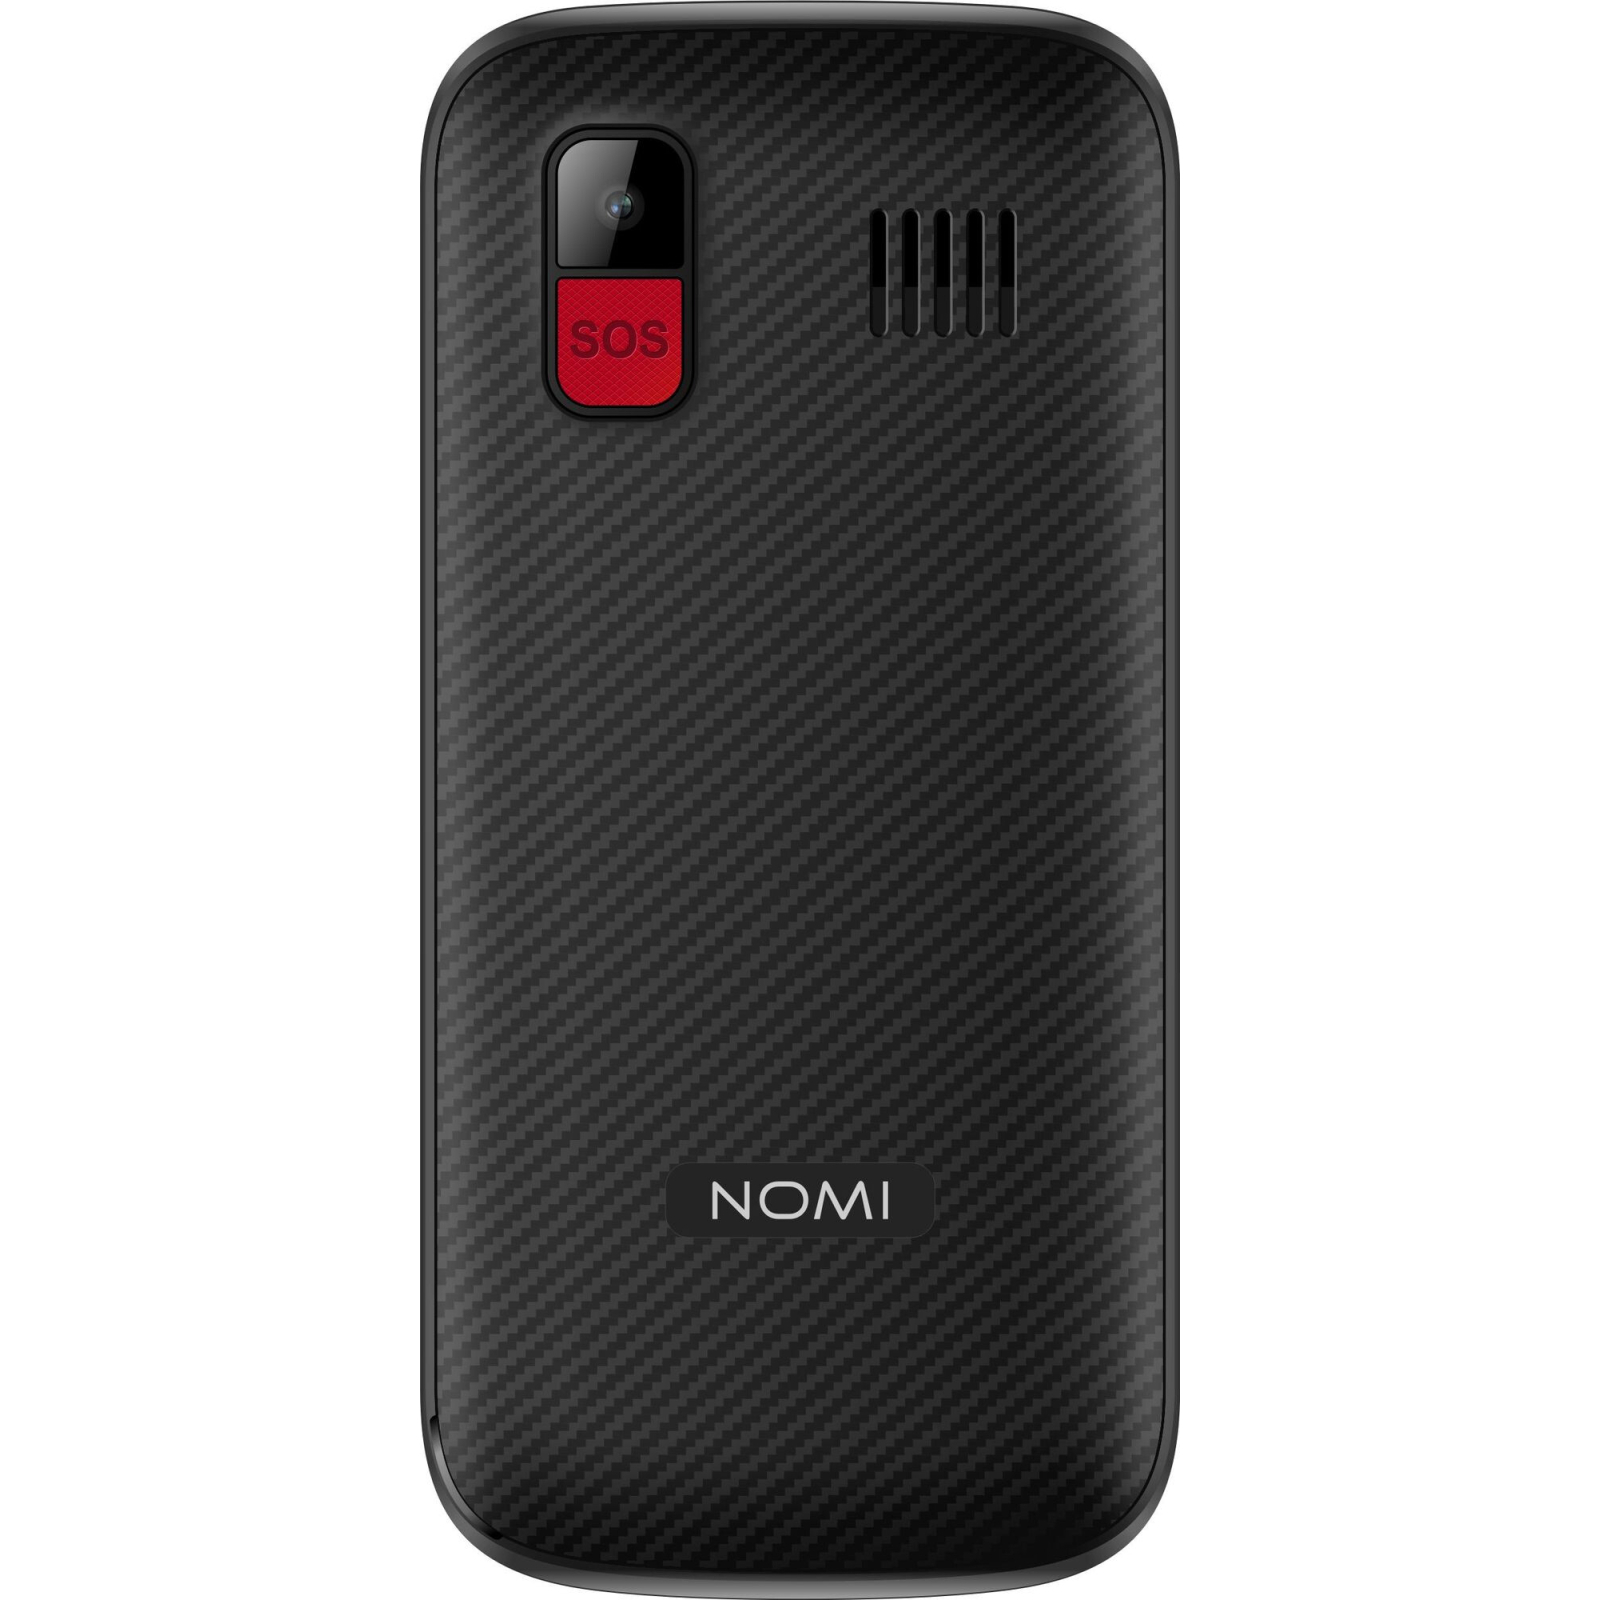 Мобильный телефон Nomi i220 Black изображение 4